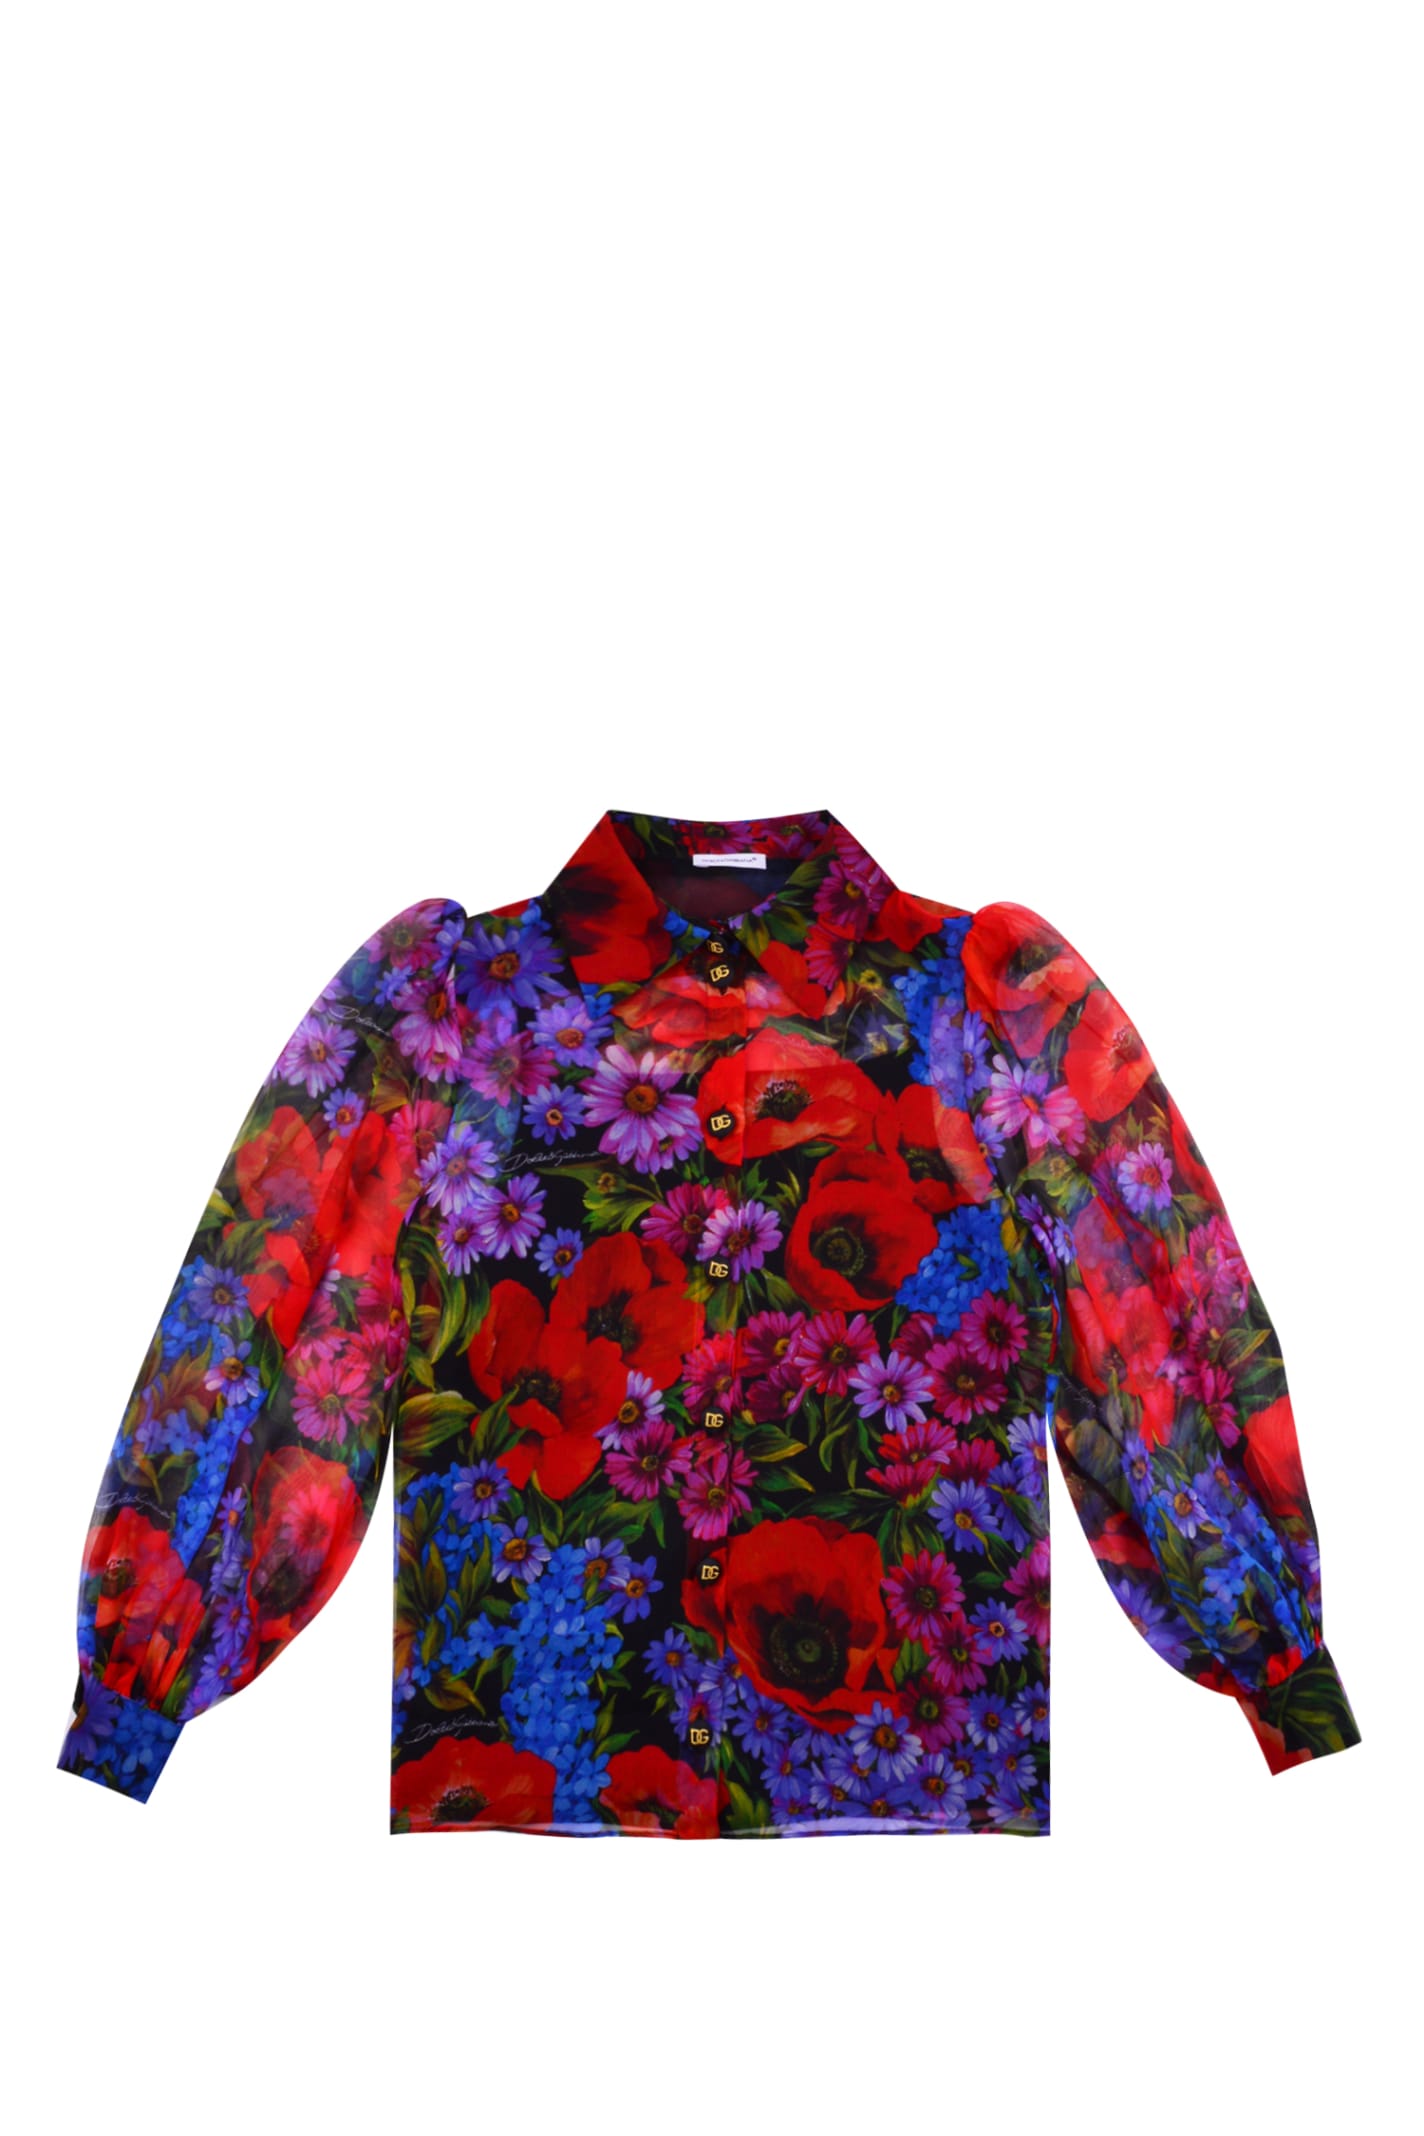 Dolce & Gabbana Silk Shirt With Lawn Print